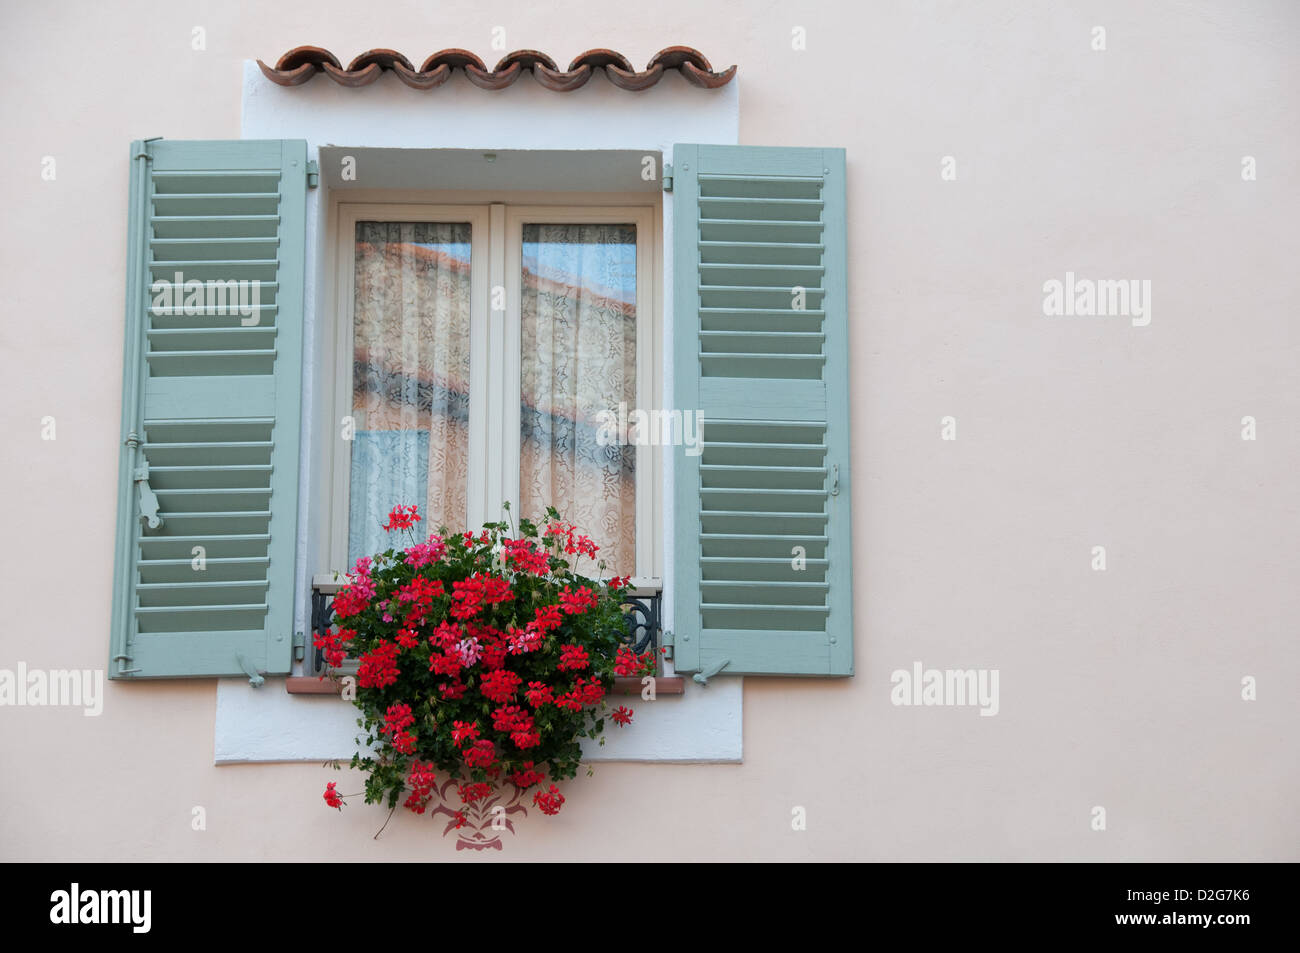 Fenêtre d'une maison Montauroux Provence France Banque D'Images